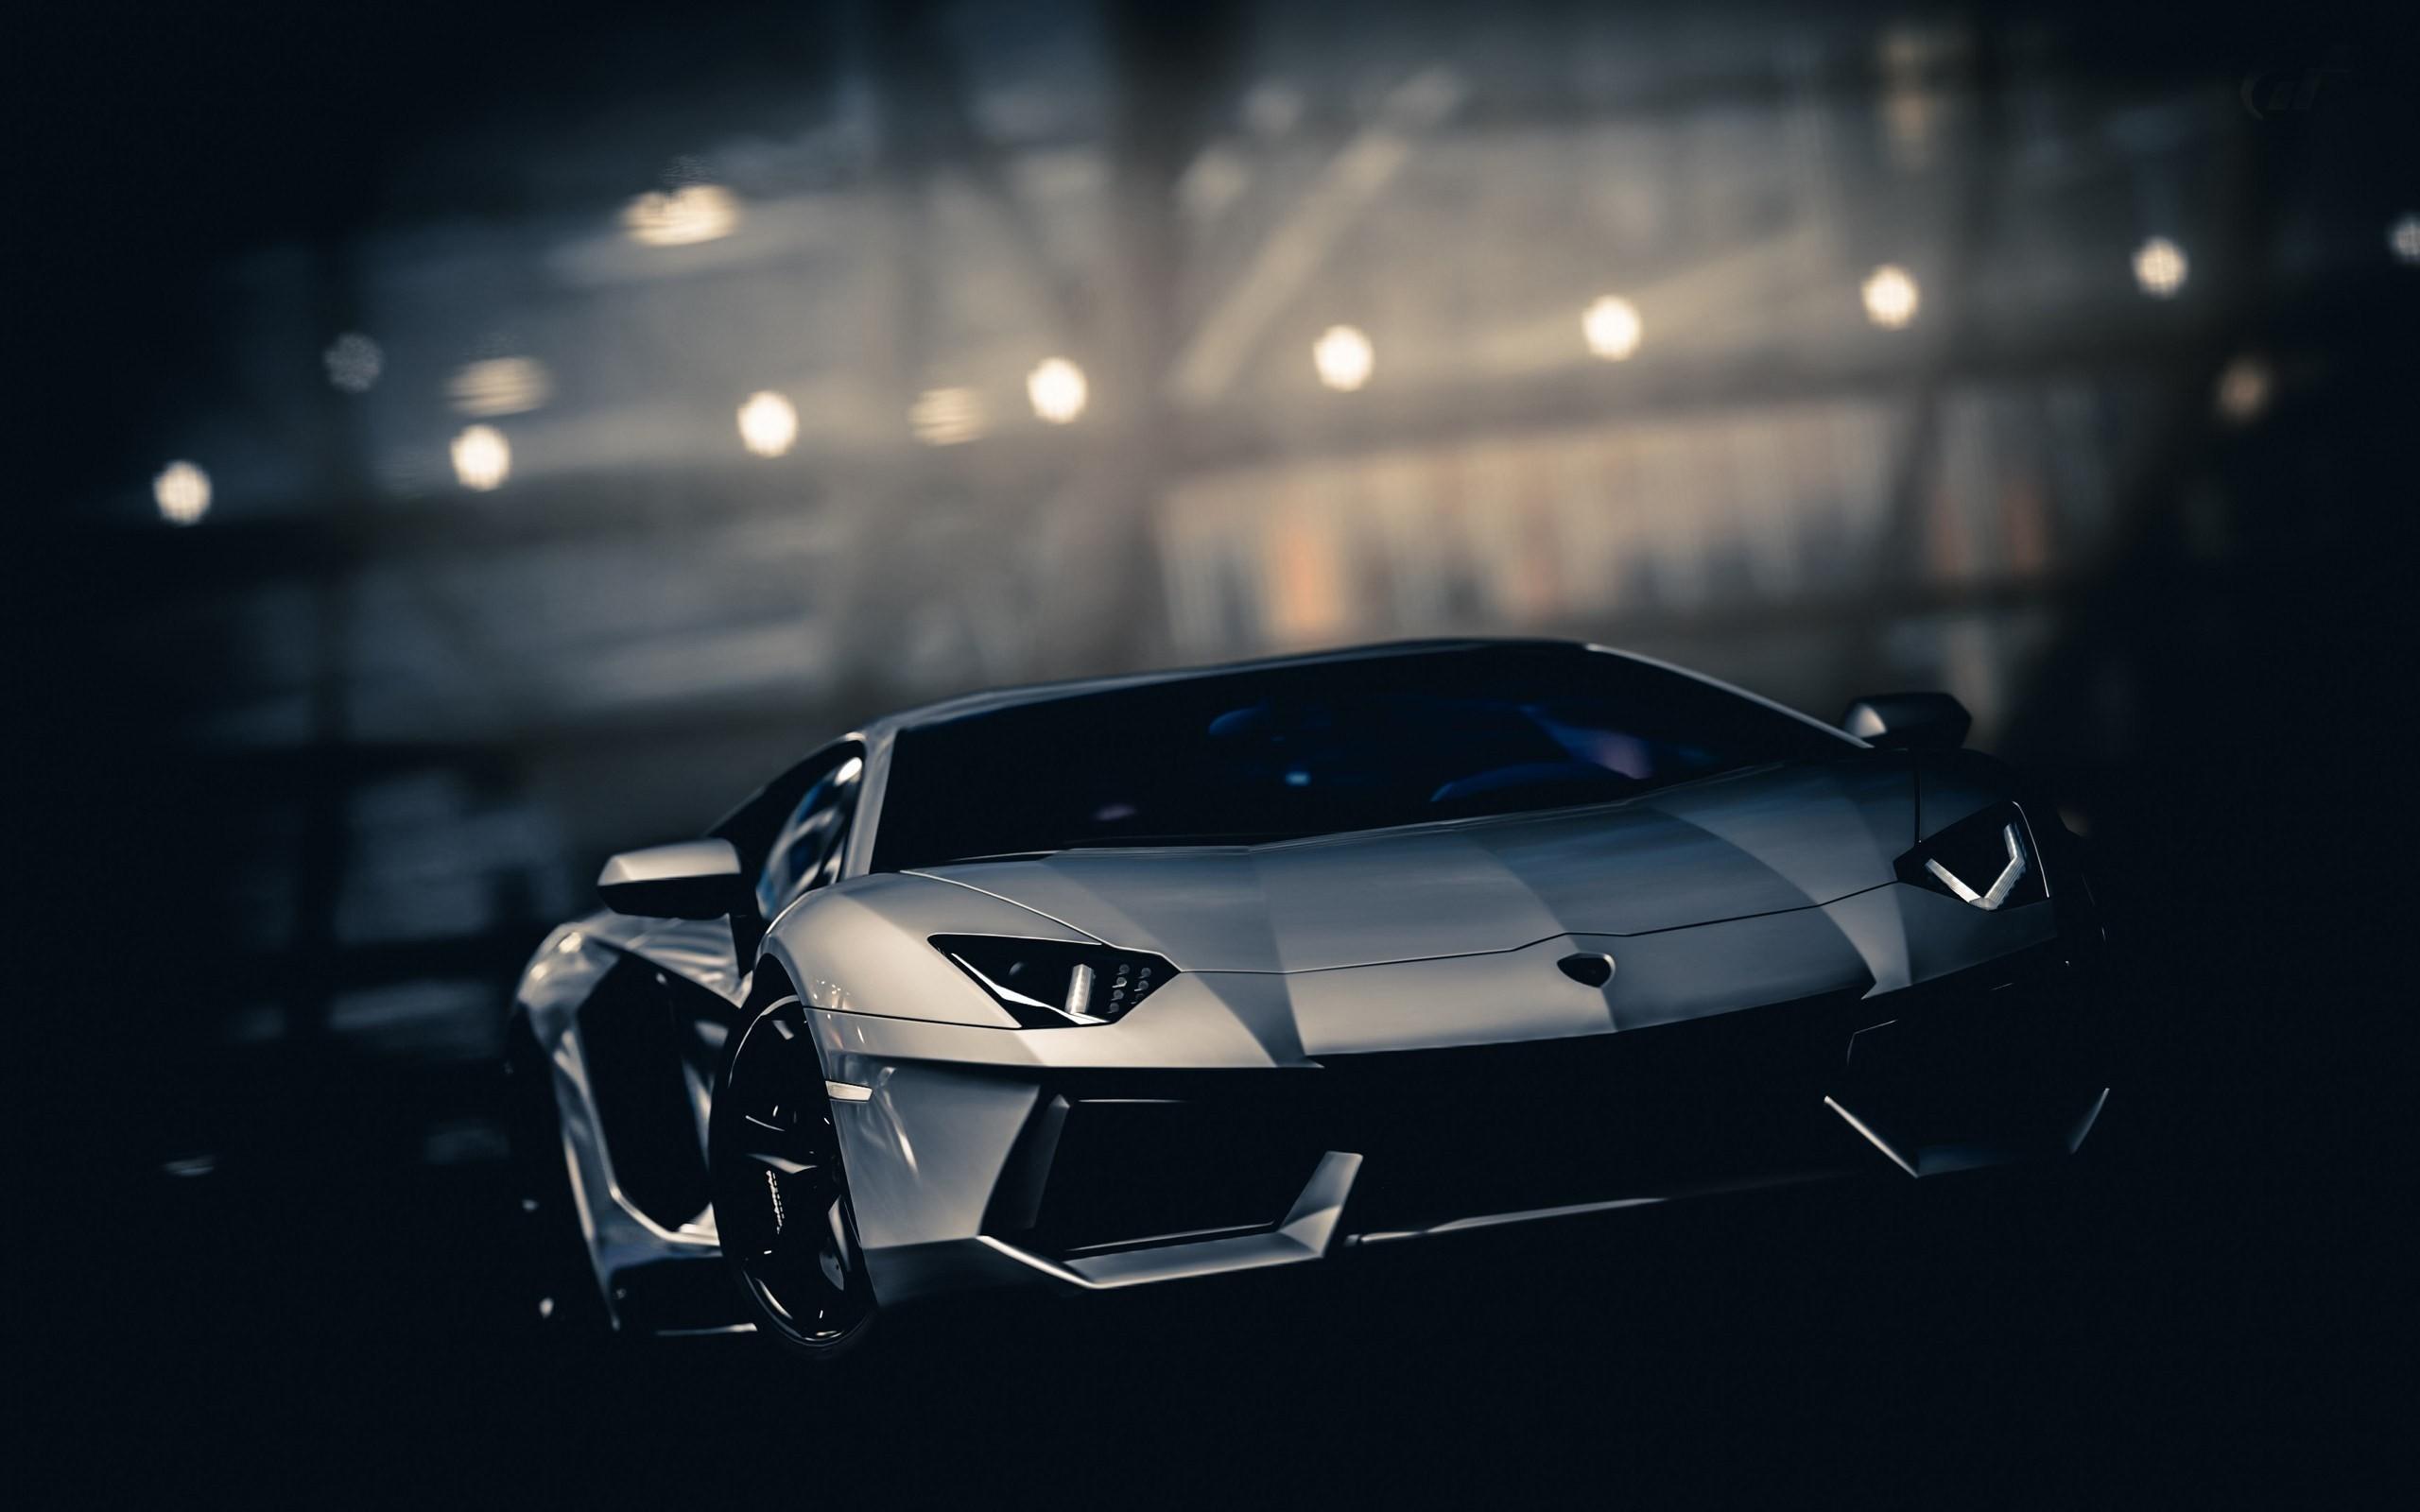 Wallpaper of Lamborghini Car